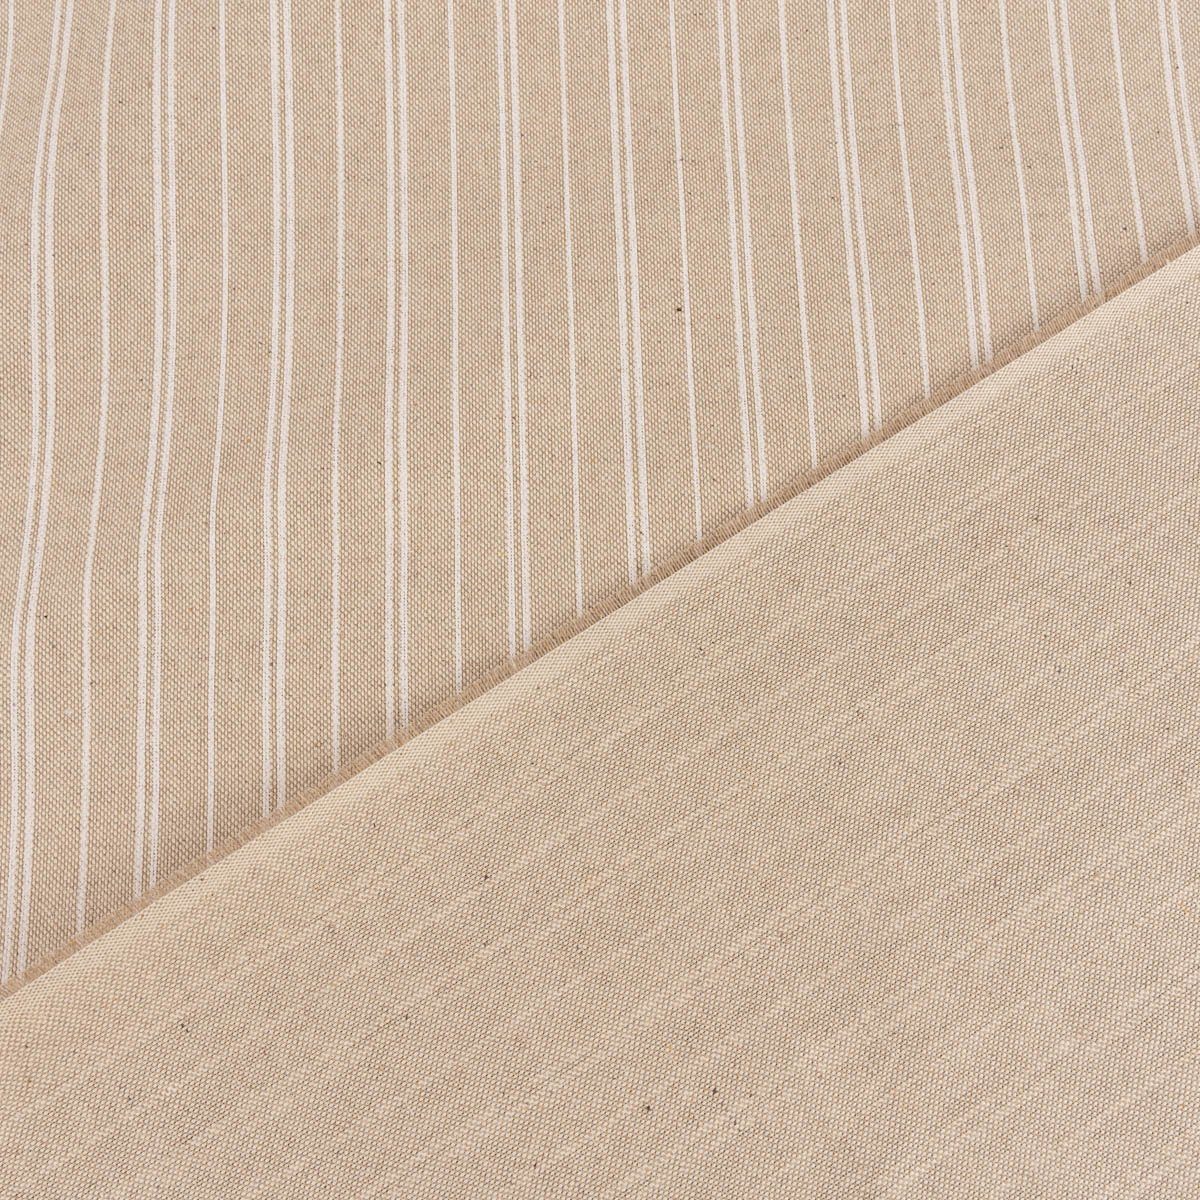 Streifen LEBEN. Stripe Basic natur handmade 40x160cm, Tischläufer SCHÖNER weiß Leinenlook Tischläufer